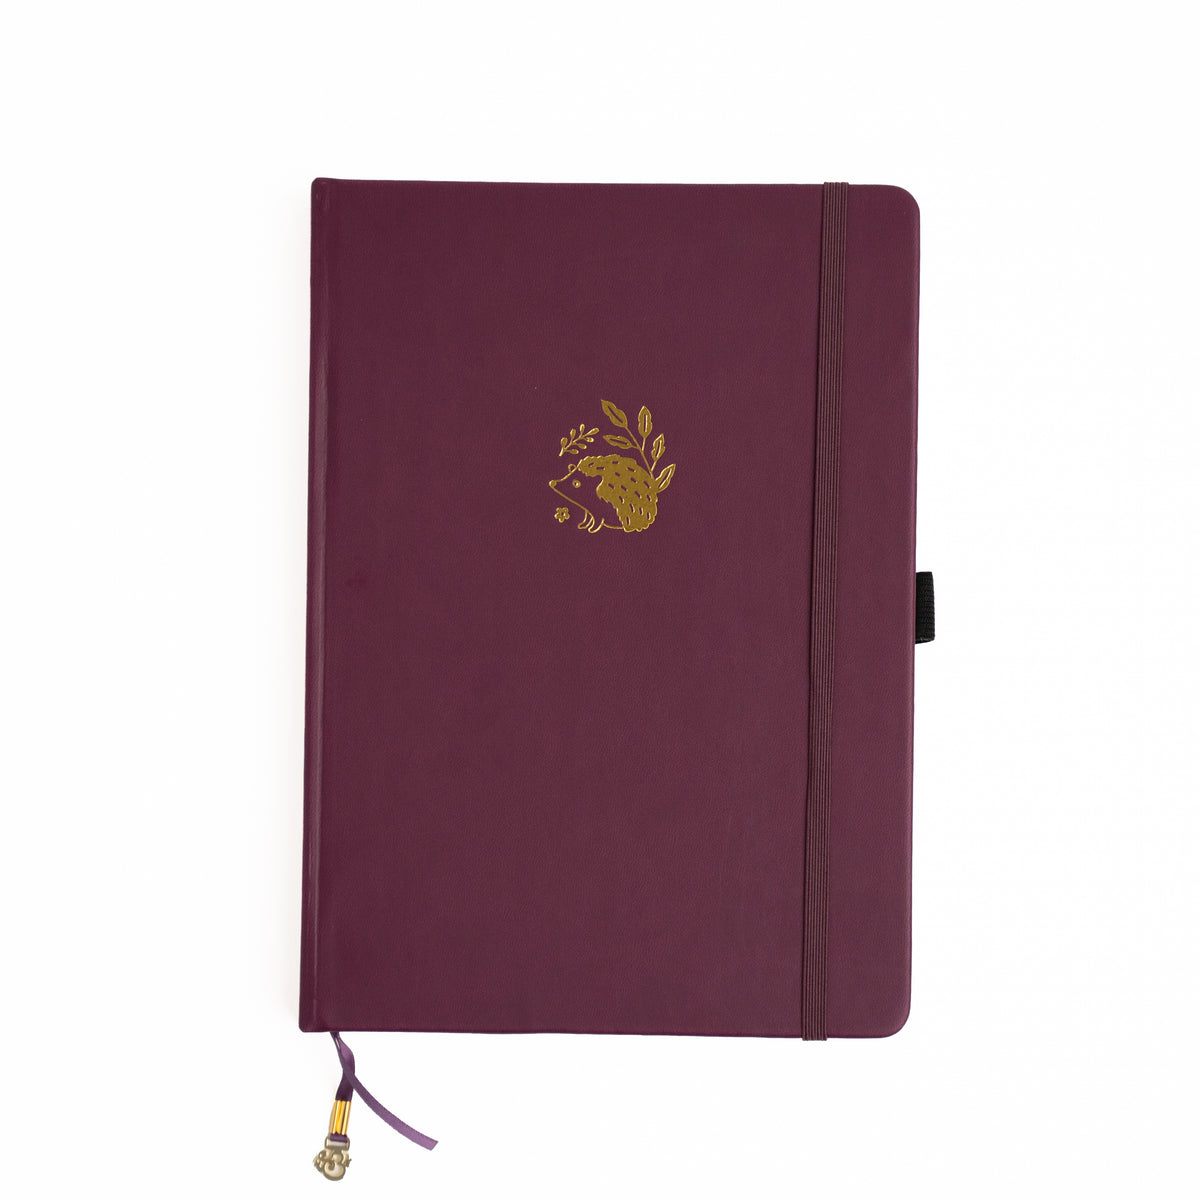 Archer and Olive Notebook - Hedgehog Design